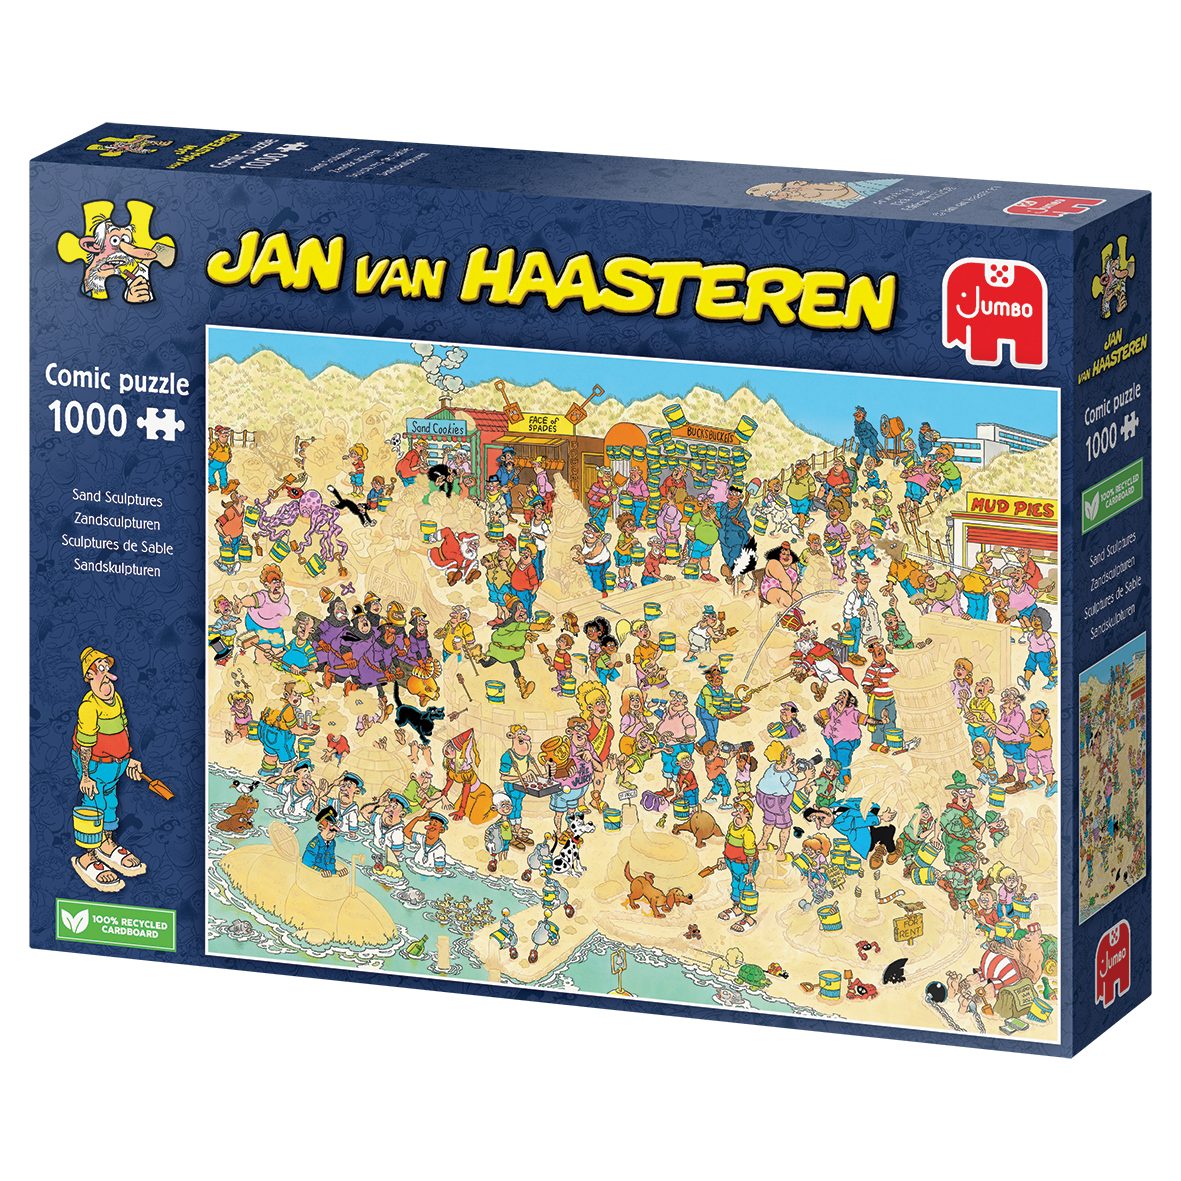 Puzzle van Haasteren Jan 20071 Puzzleteile Sandskulpturen, 1000 Spiele Jumbo Jumbo